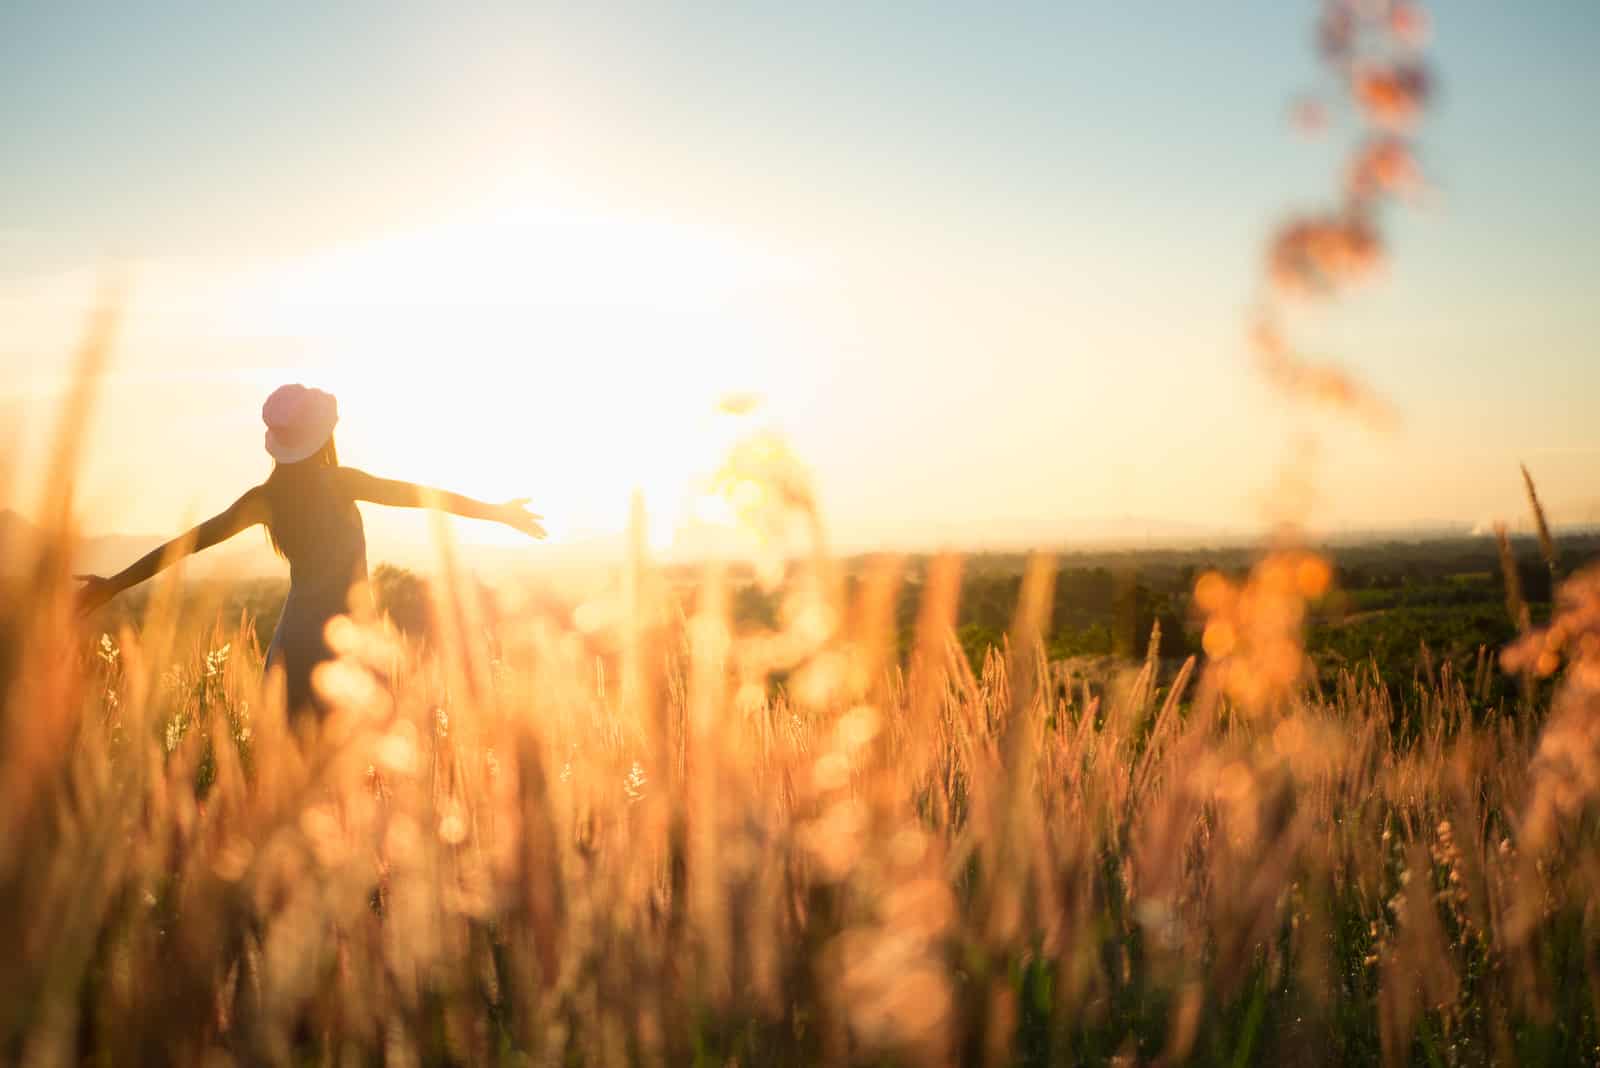 une femme dans un champ de blé se tient les bras tendus